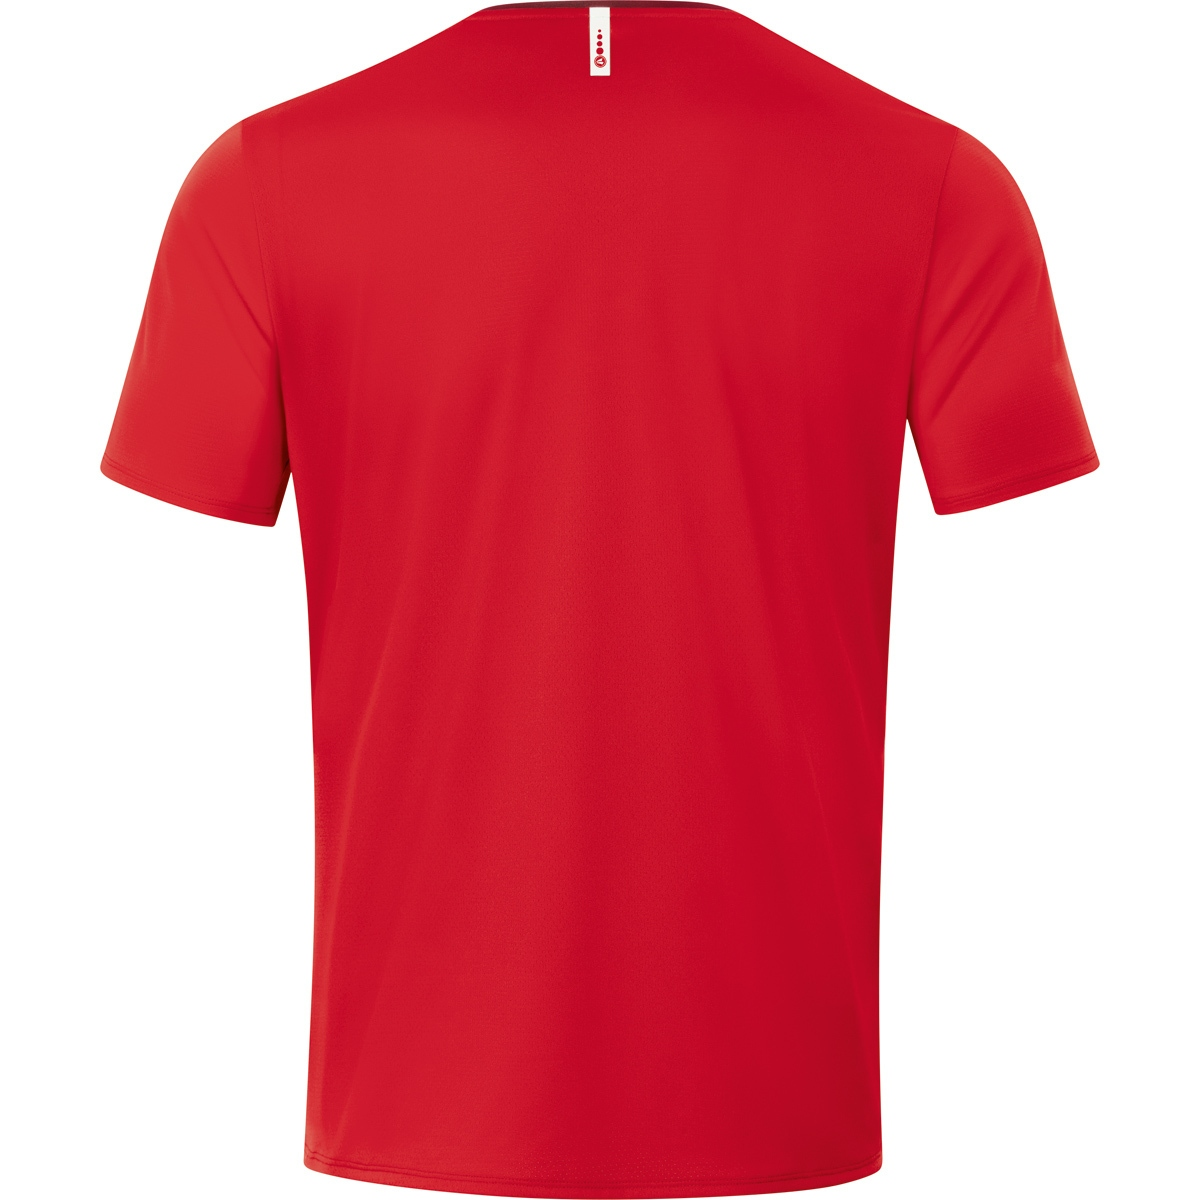 JAKO T-Shirt Champ 4XL, 2.0 6120 Herren, rot/weinrot, Gr